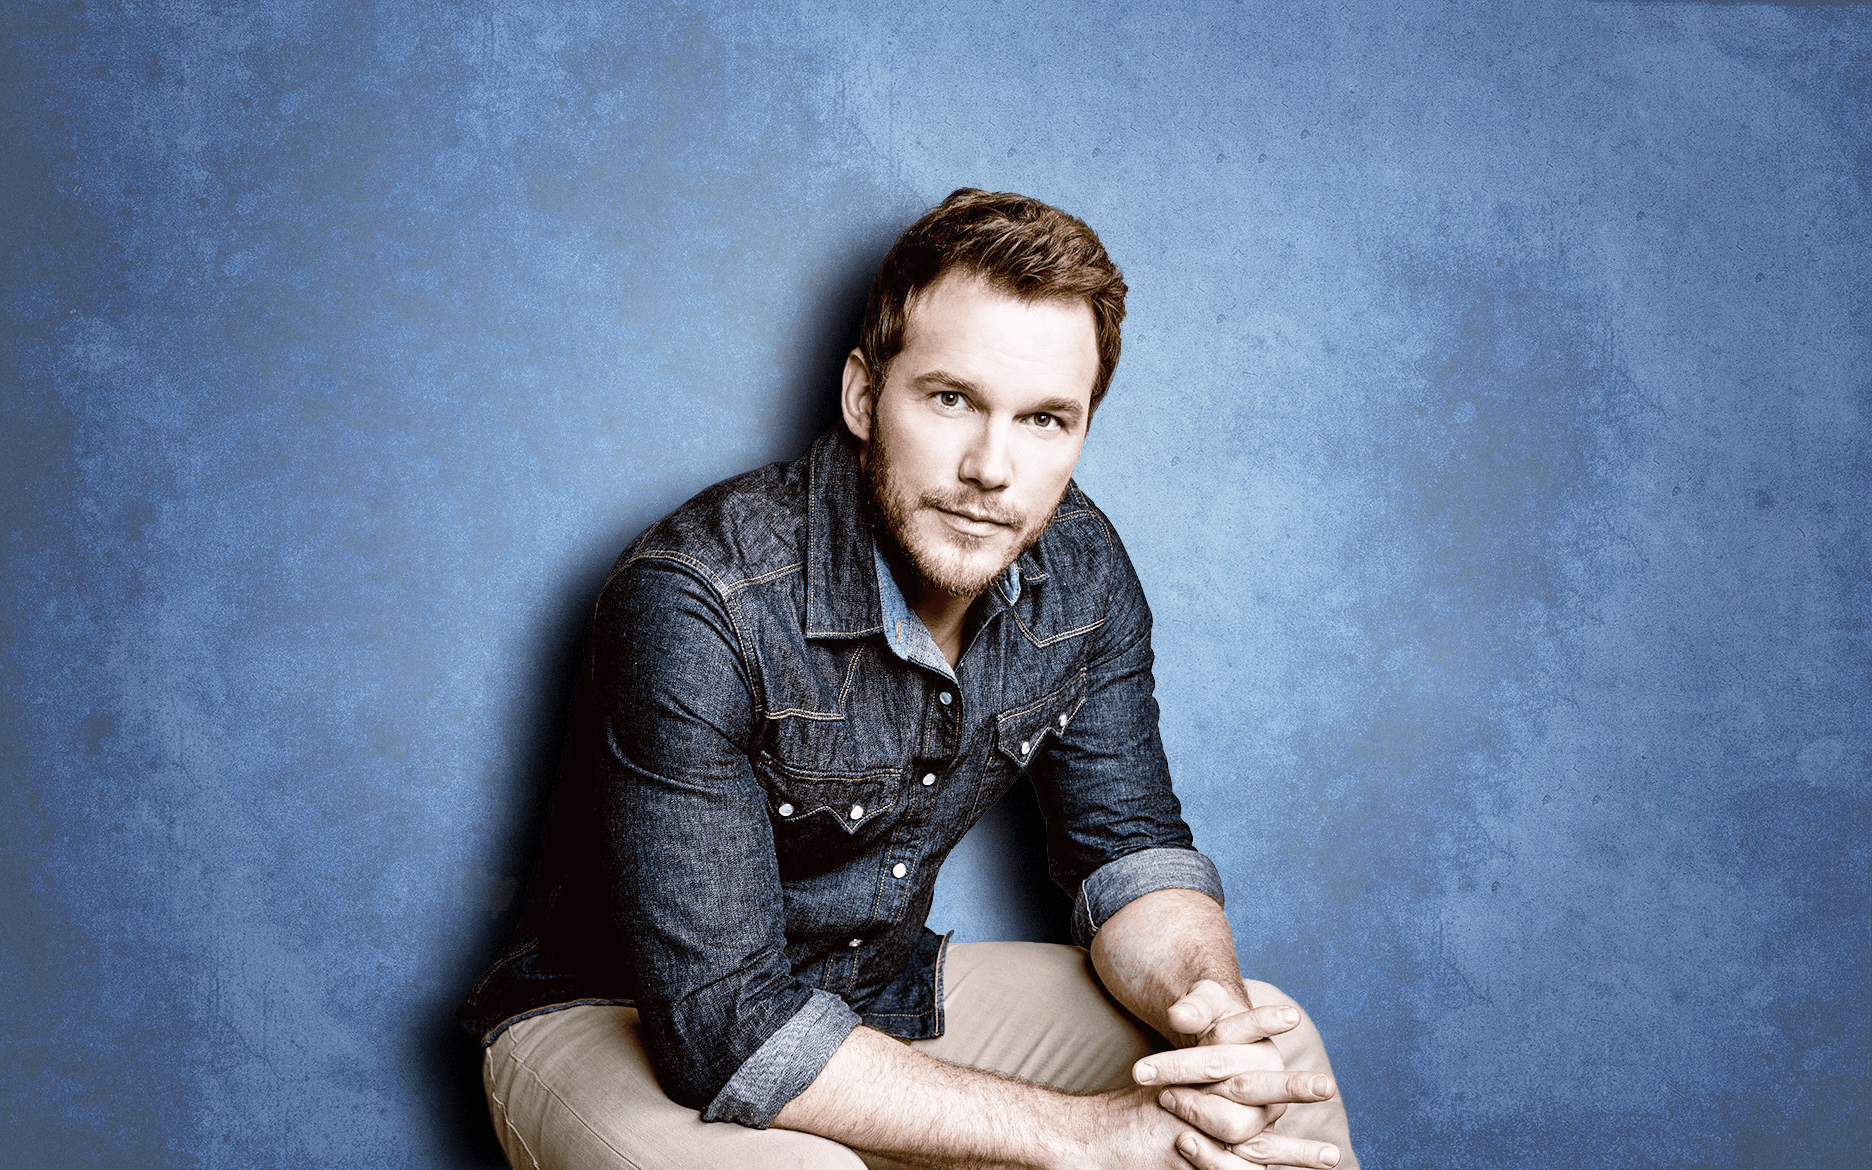 Chris Pratt, Actor, Blue Background Wallpaper HD / Desktop